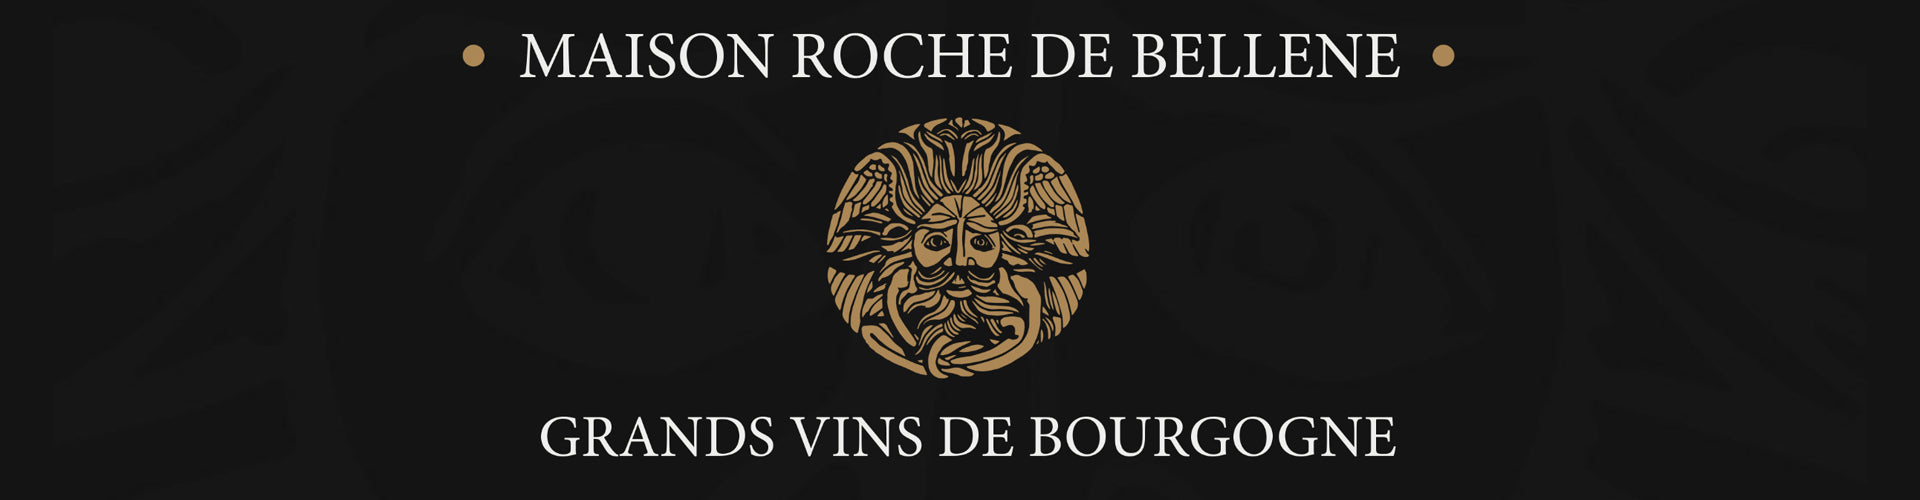 Maison Roche de Bellene Wine Négociant Collection Banner